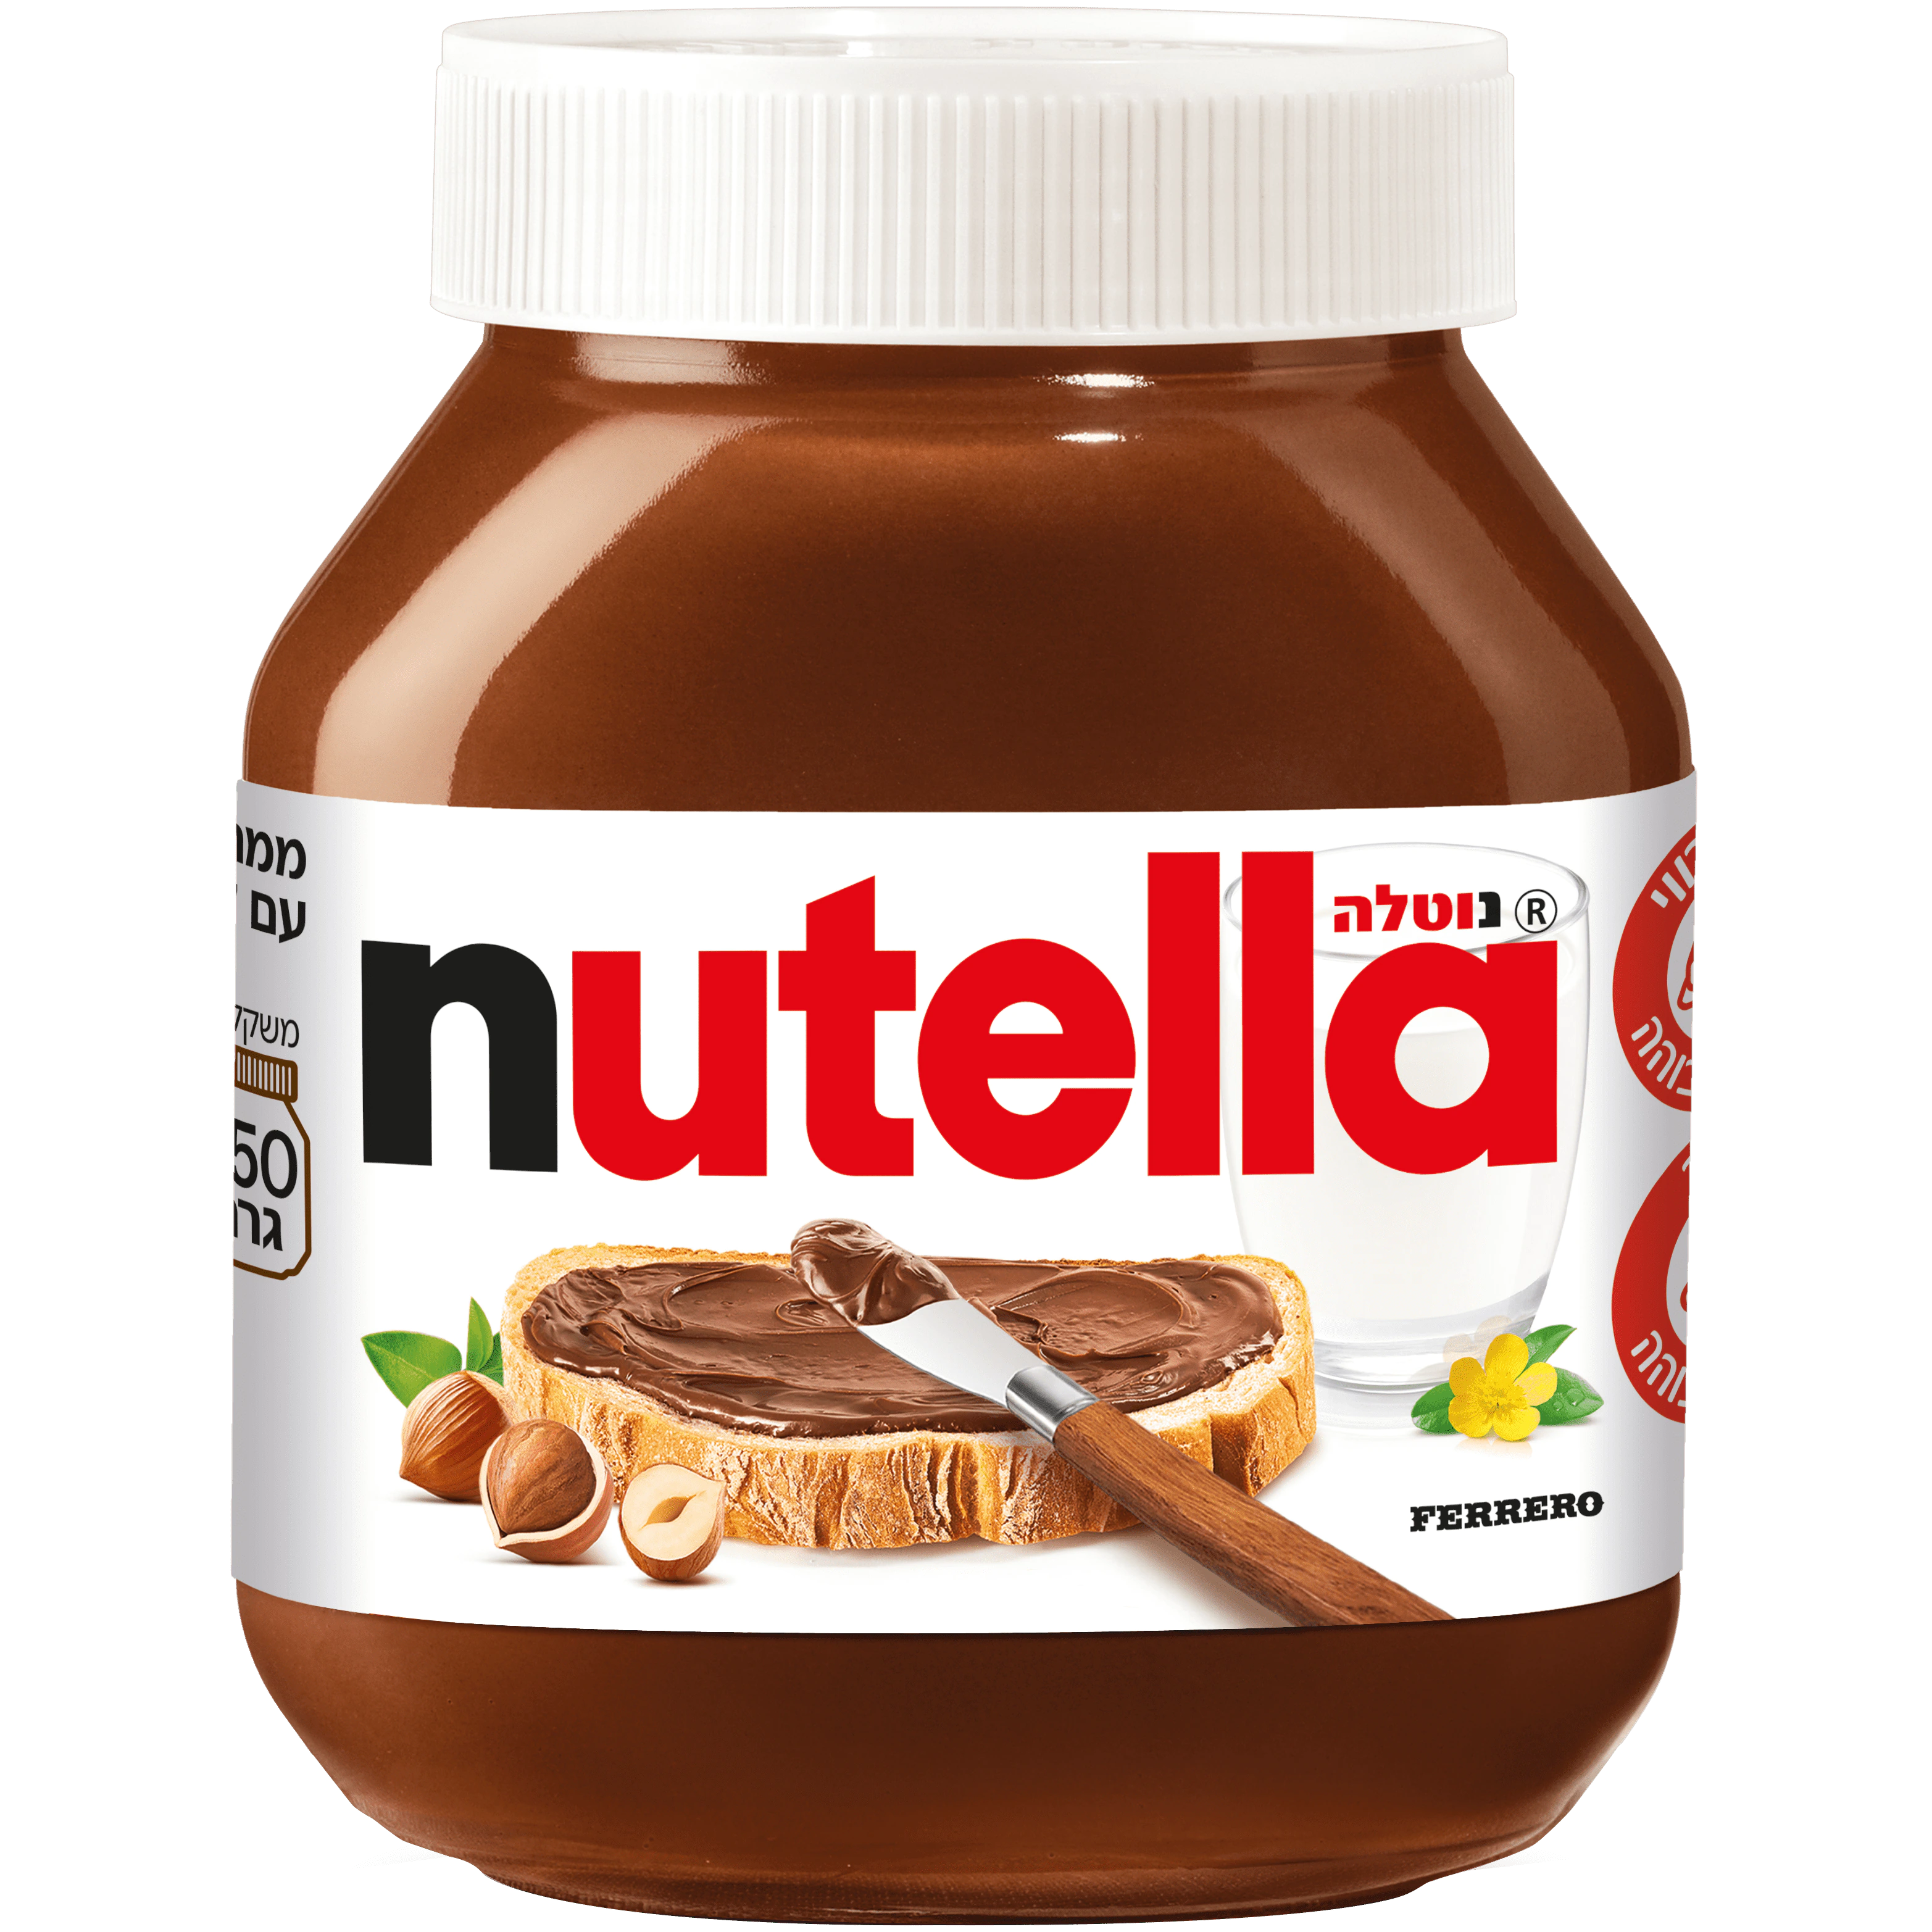 Nutella Transparent Image